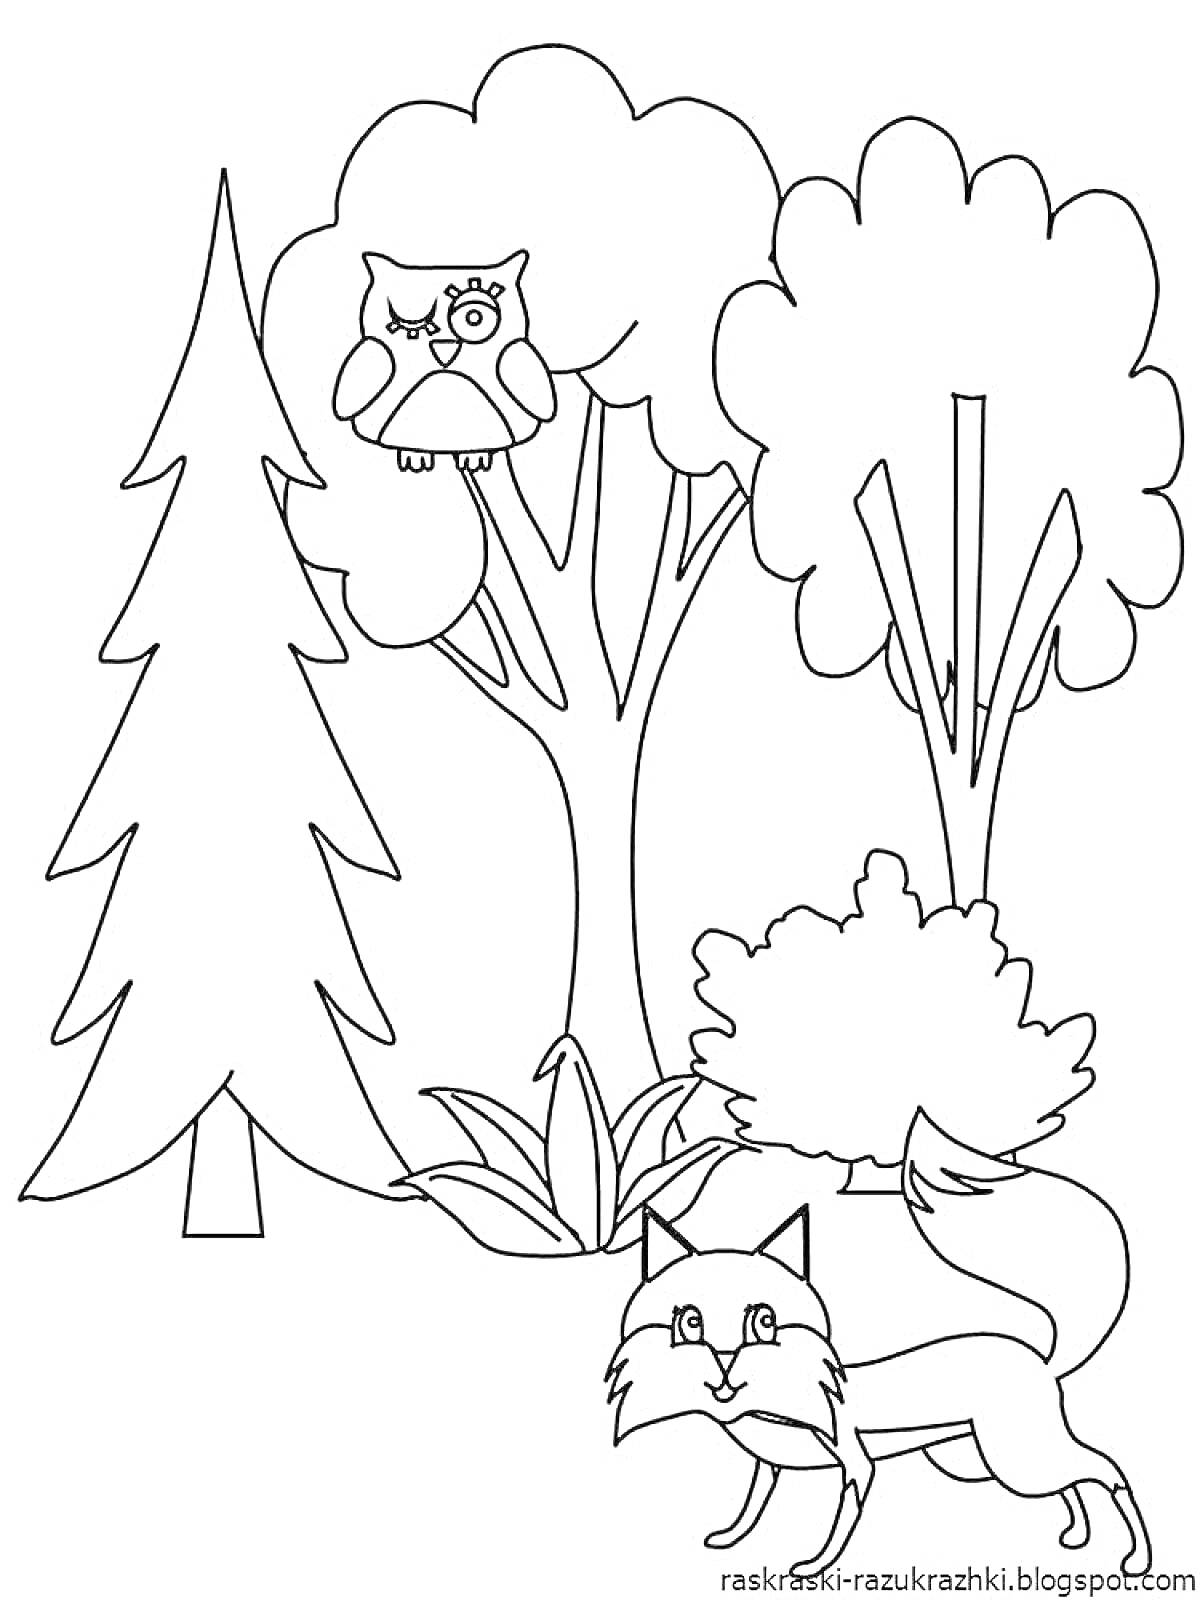 Раскраска Лес с лисой, совой на дереве и растениями